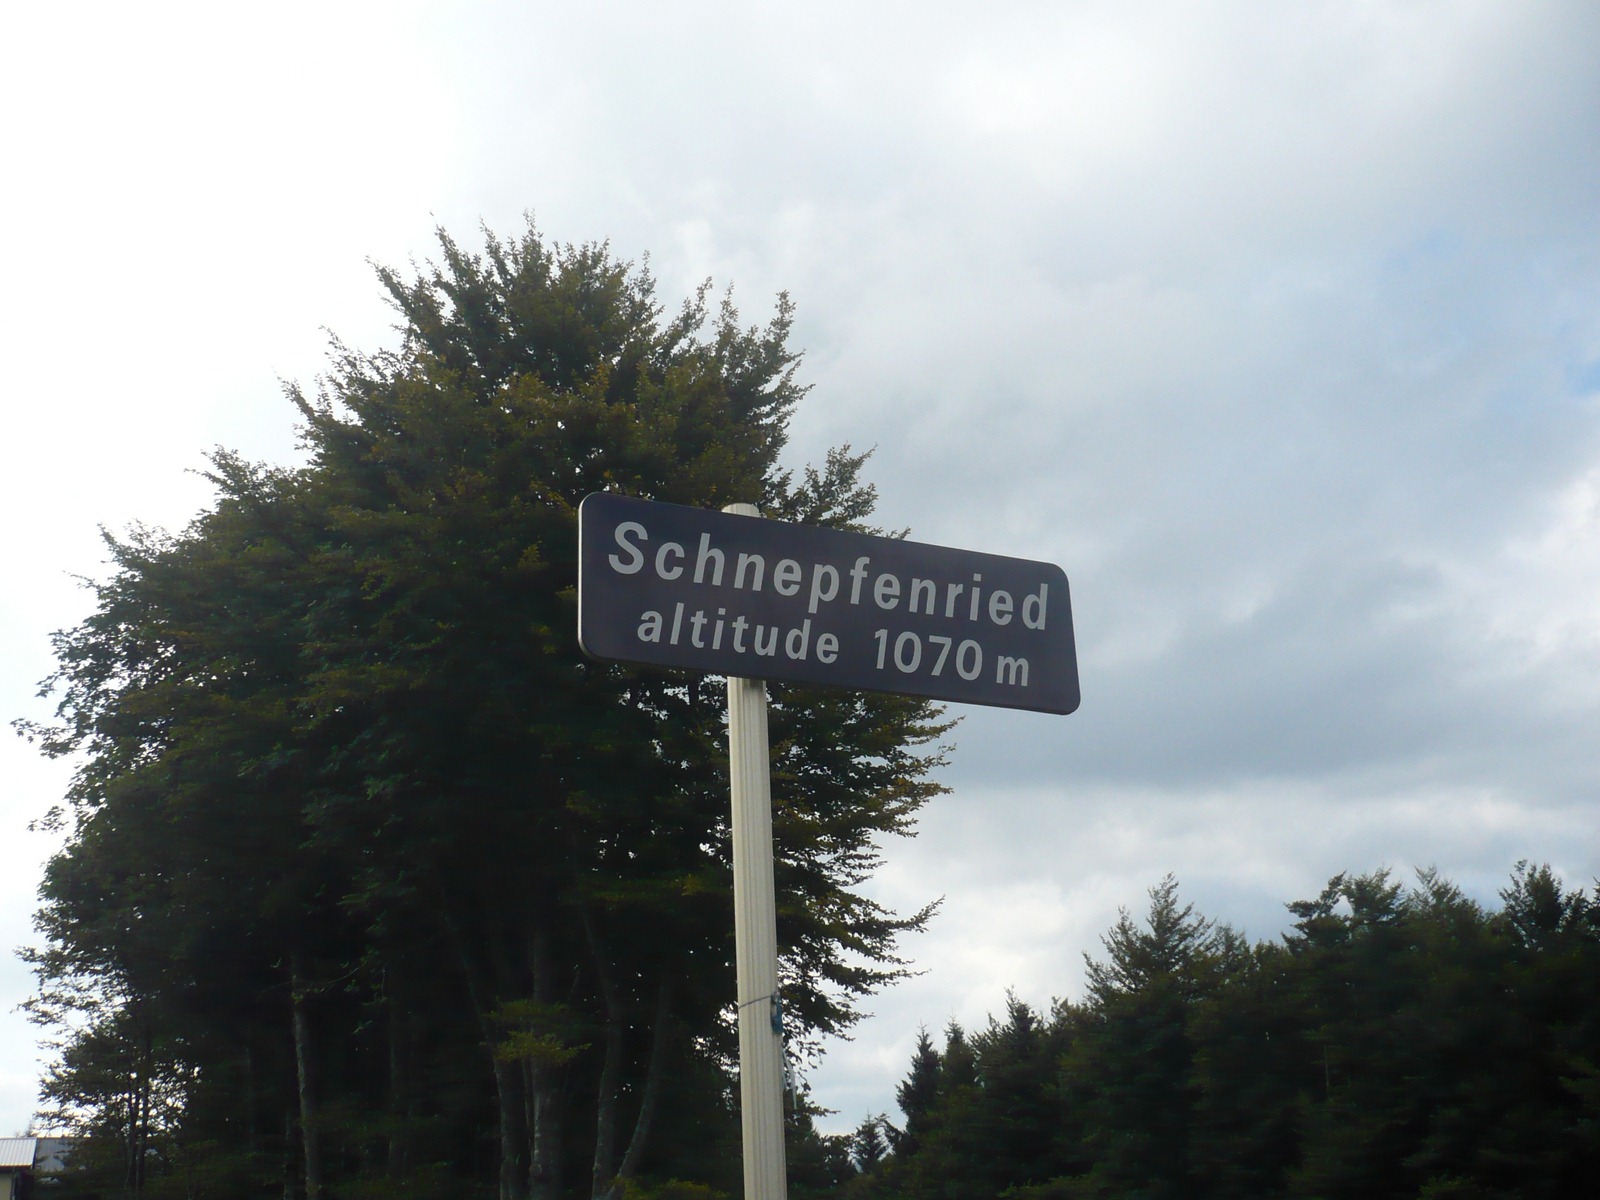 Schnepfenried - 1070m